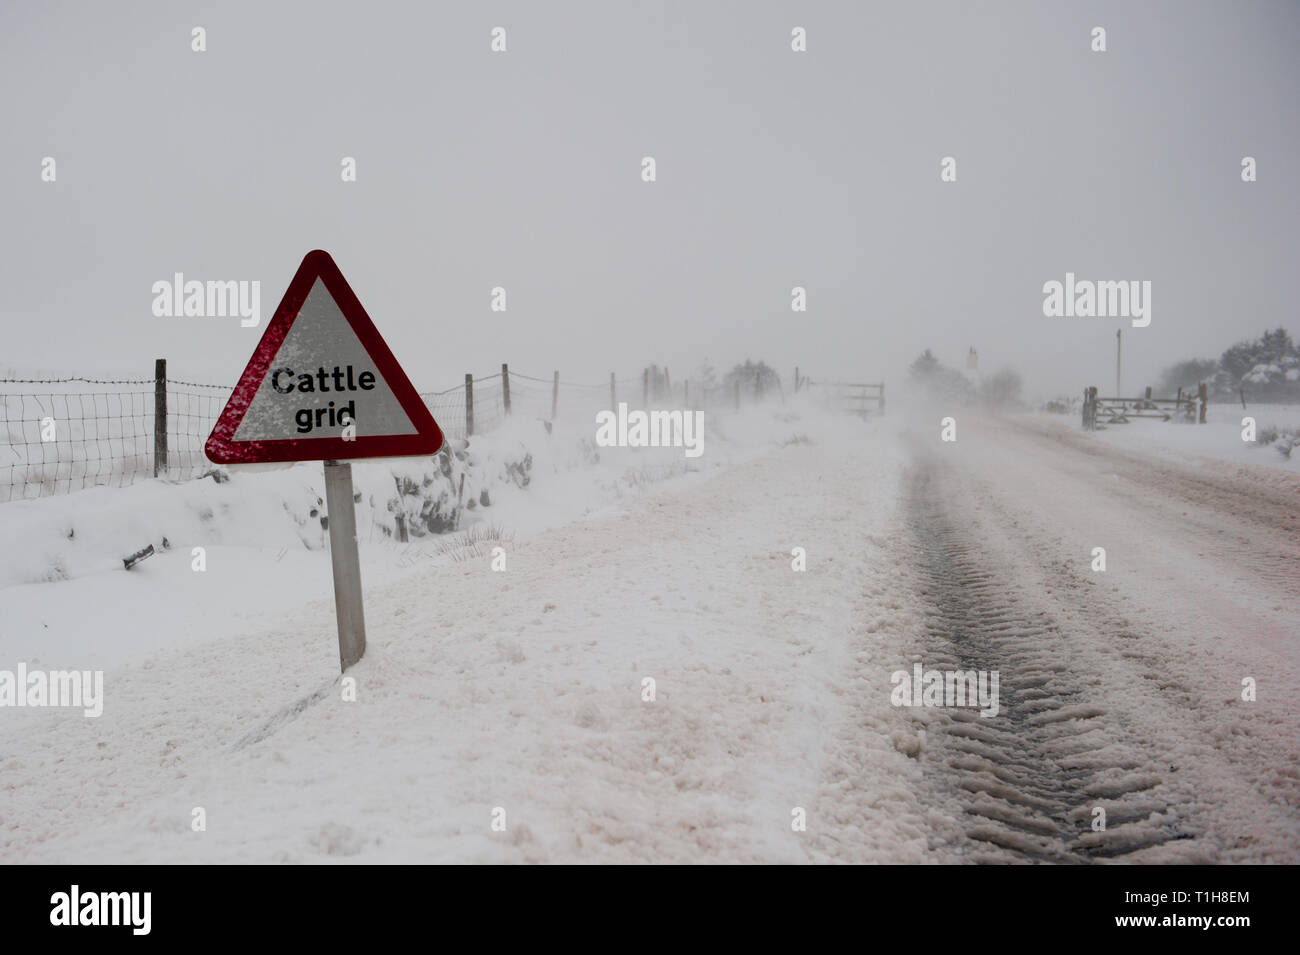 Carretera cubierta de nieve en una ventisca con ganado Grid signo de advertencia en primer plano con copia espacio a la derecha Foto de stock